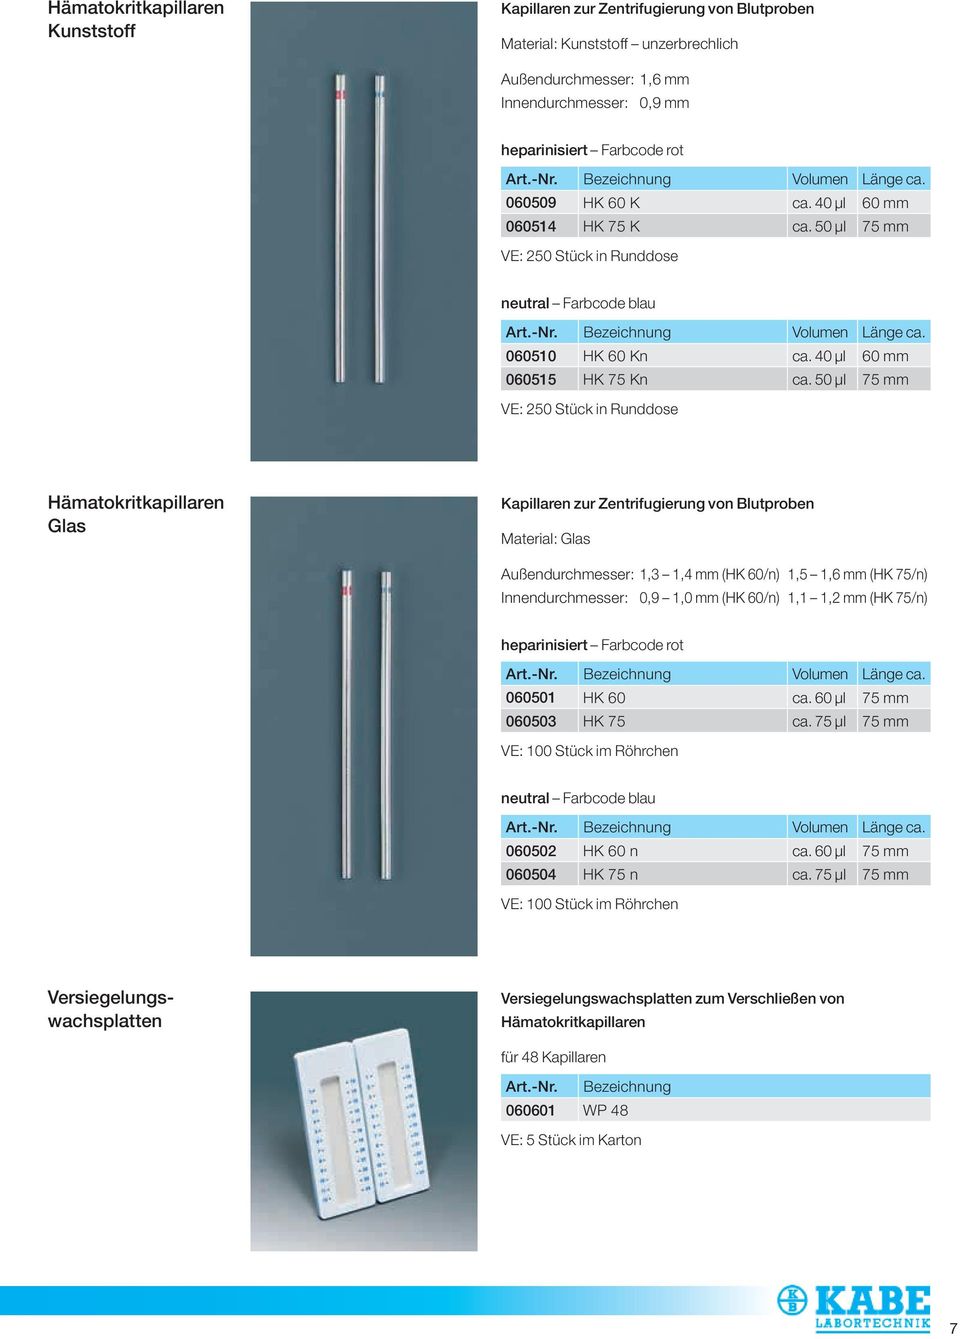 50 µl 75 mm Hämatokritkapillaren Glas Kapillaren zur Zentrifugierung von Blutproben Material: Glas Außendurchmesser: 1,3 1,4 mm (HK 60/n) 1,5 1,6 mm (HK 75/n) Innendurchmesser: 0,9 1,0 mm (HK 60/n)